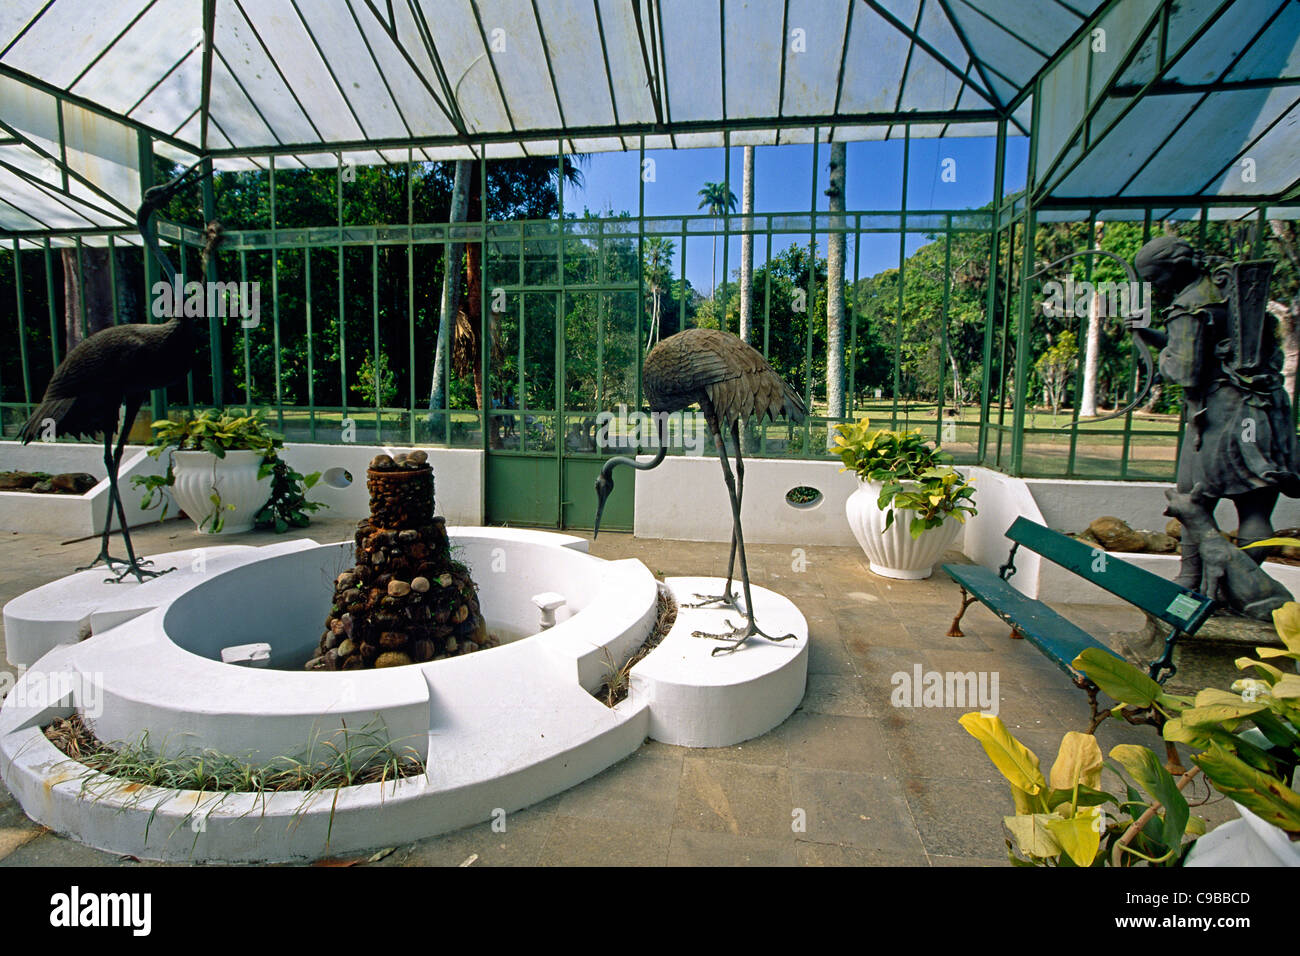 Garden Pavilion with a Fountain and Sculptures, Jardim Botanical Garden, Rio de Janeiro, Brazil Stock Photo